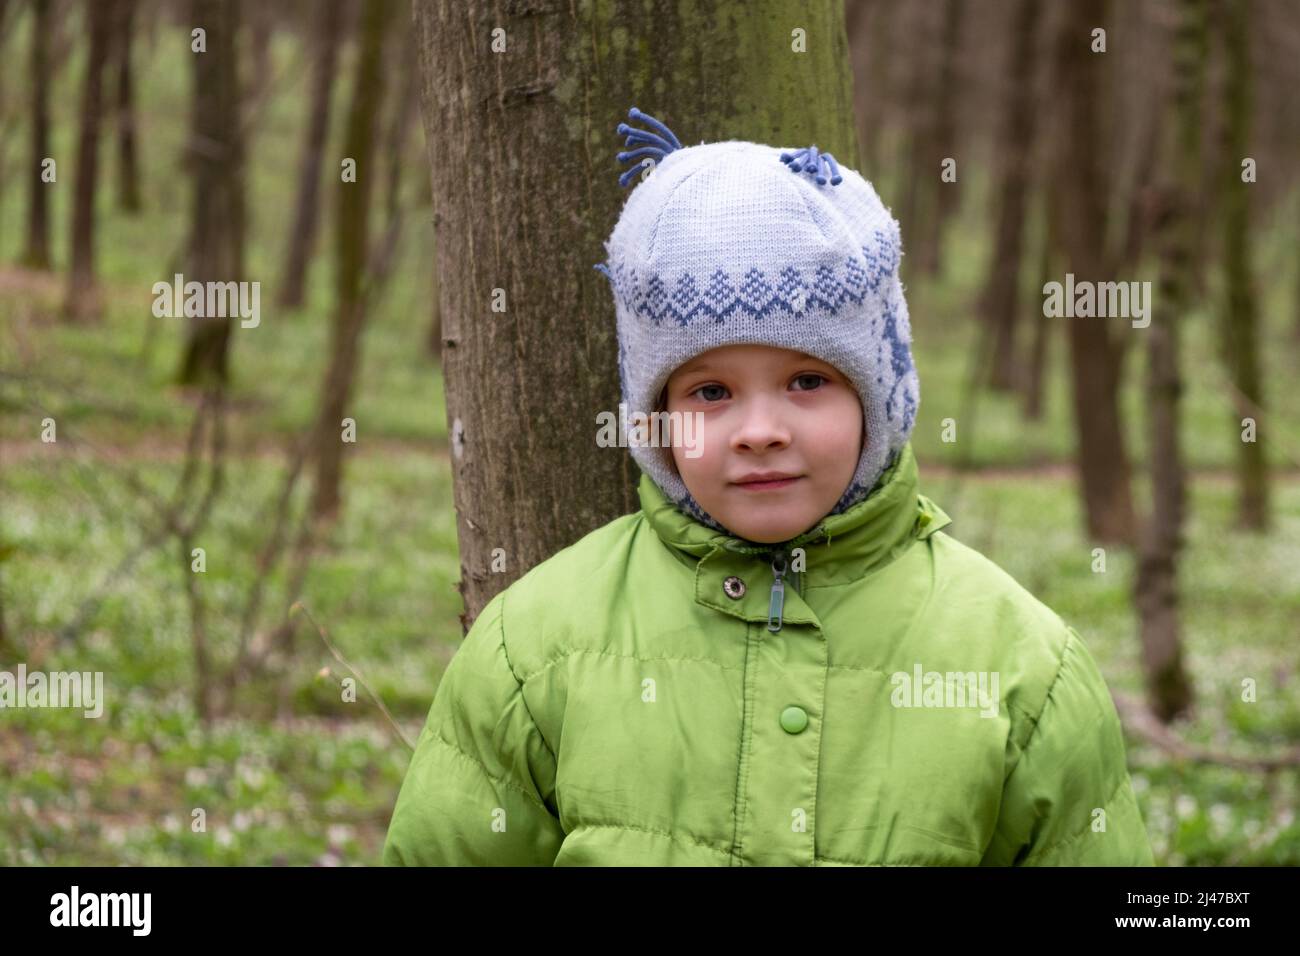 petite fille dans la forêt, enfant dans des vêtements chauds. Banque D'Images